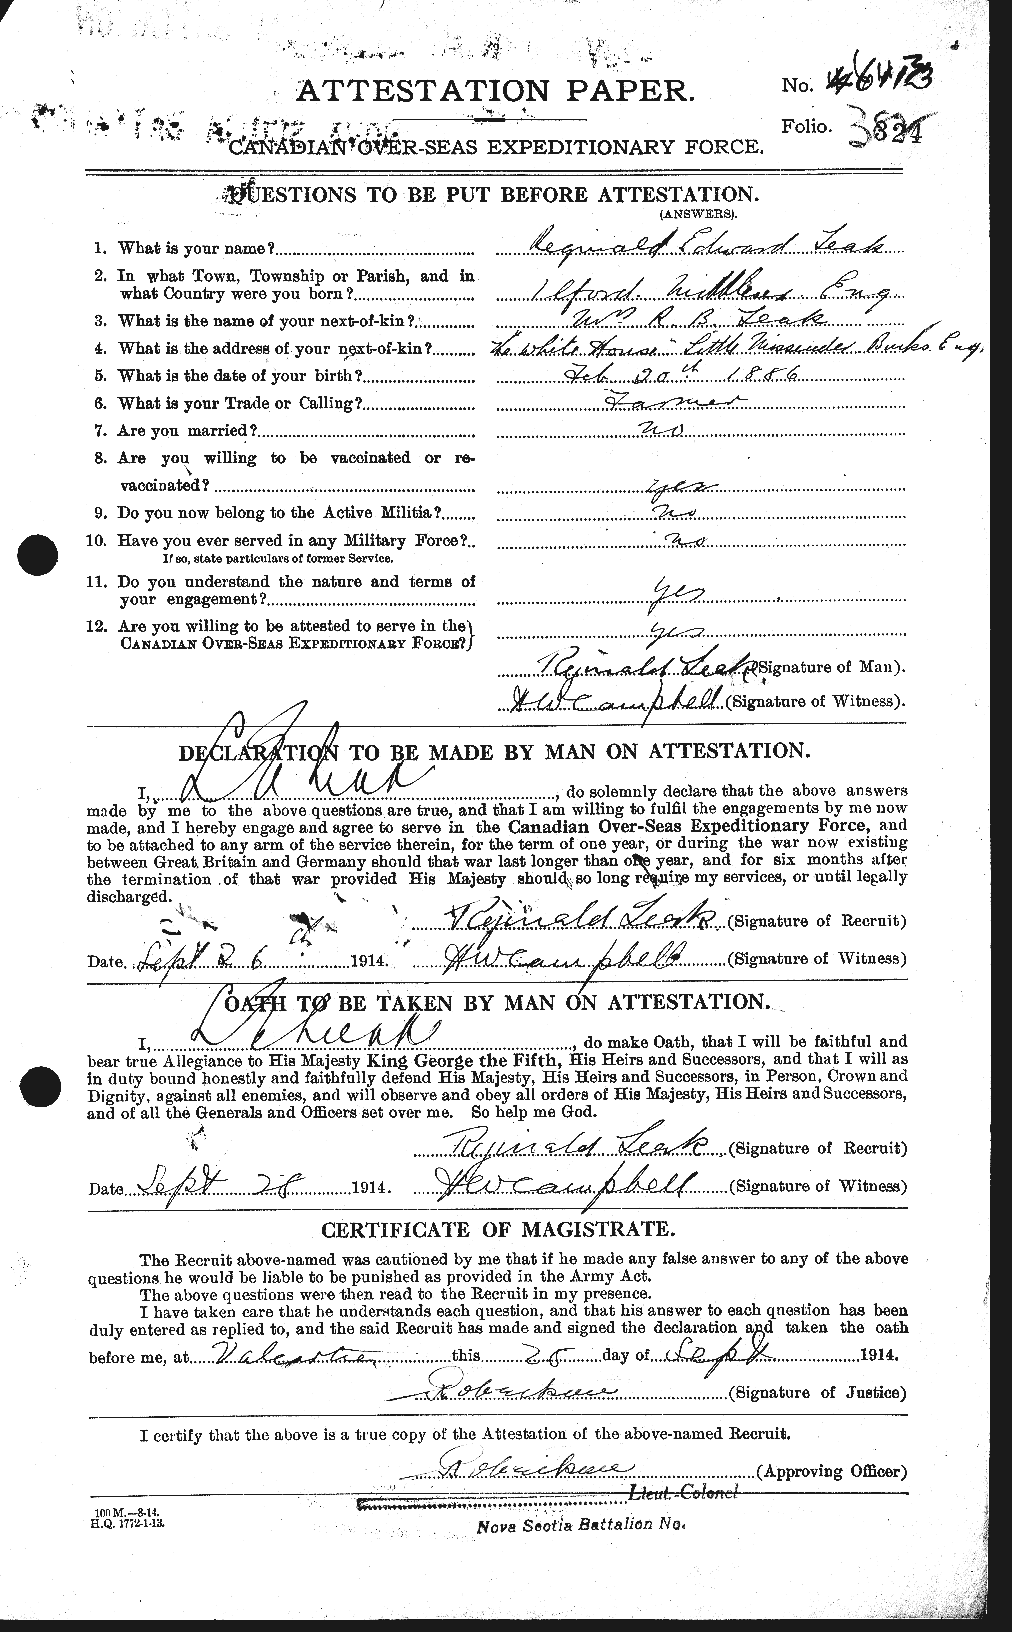 Attestation record: Reginald Edward Chambers Leak